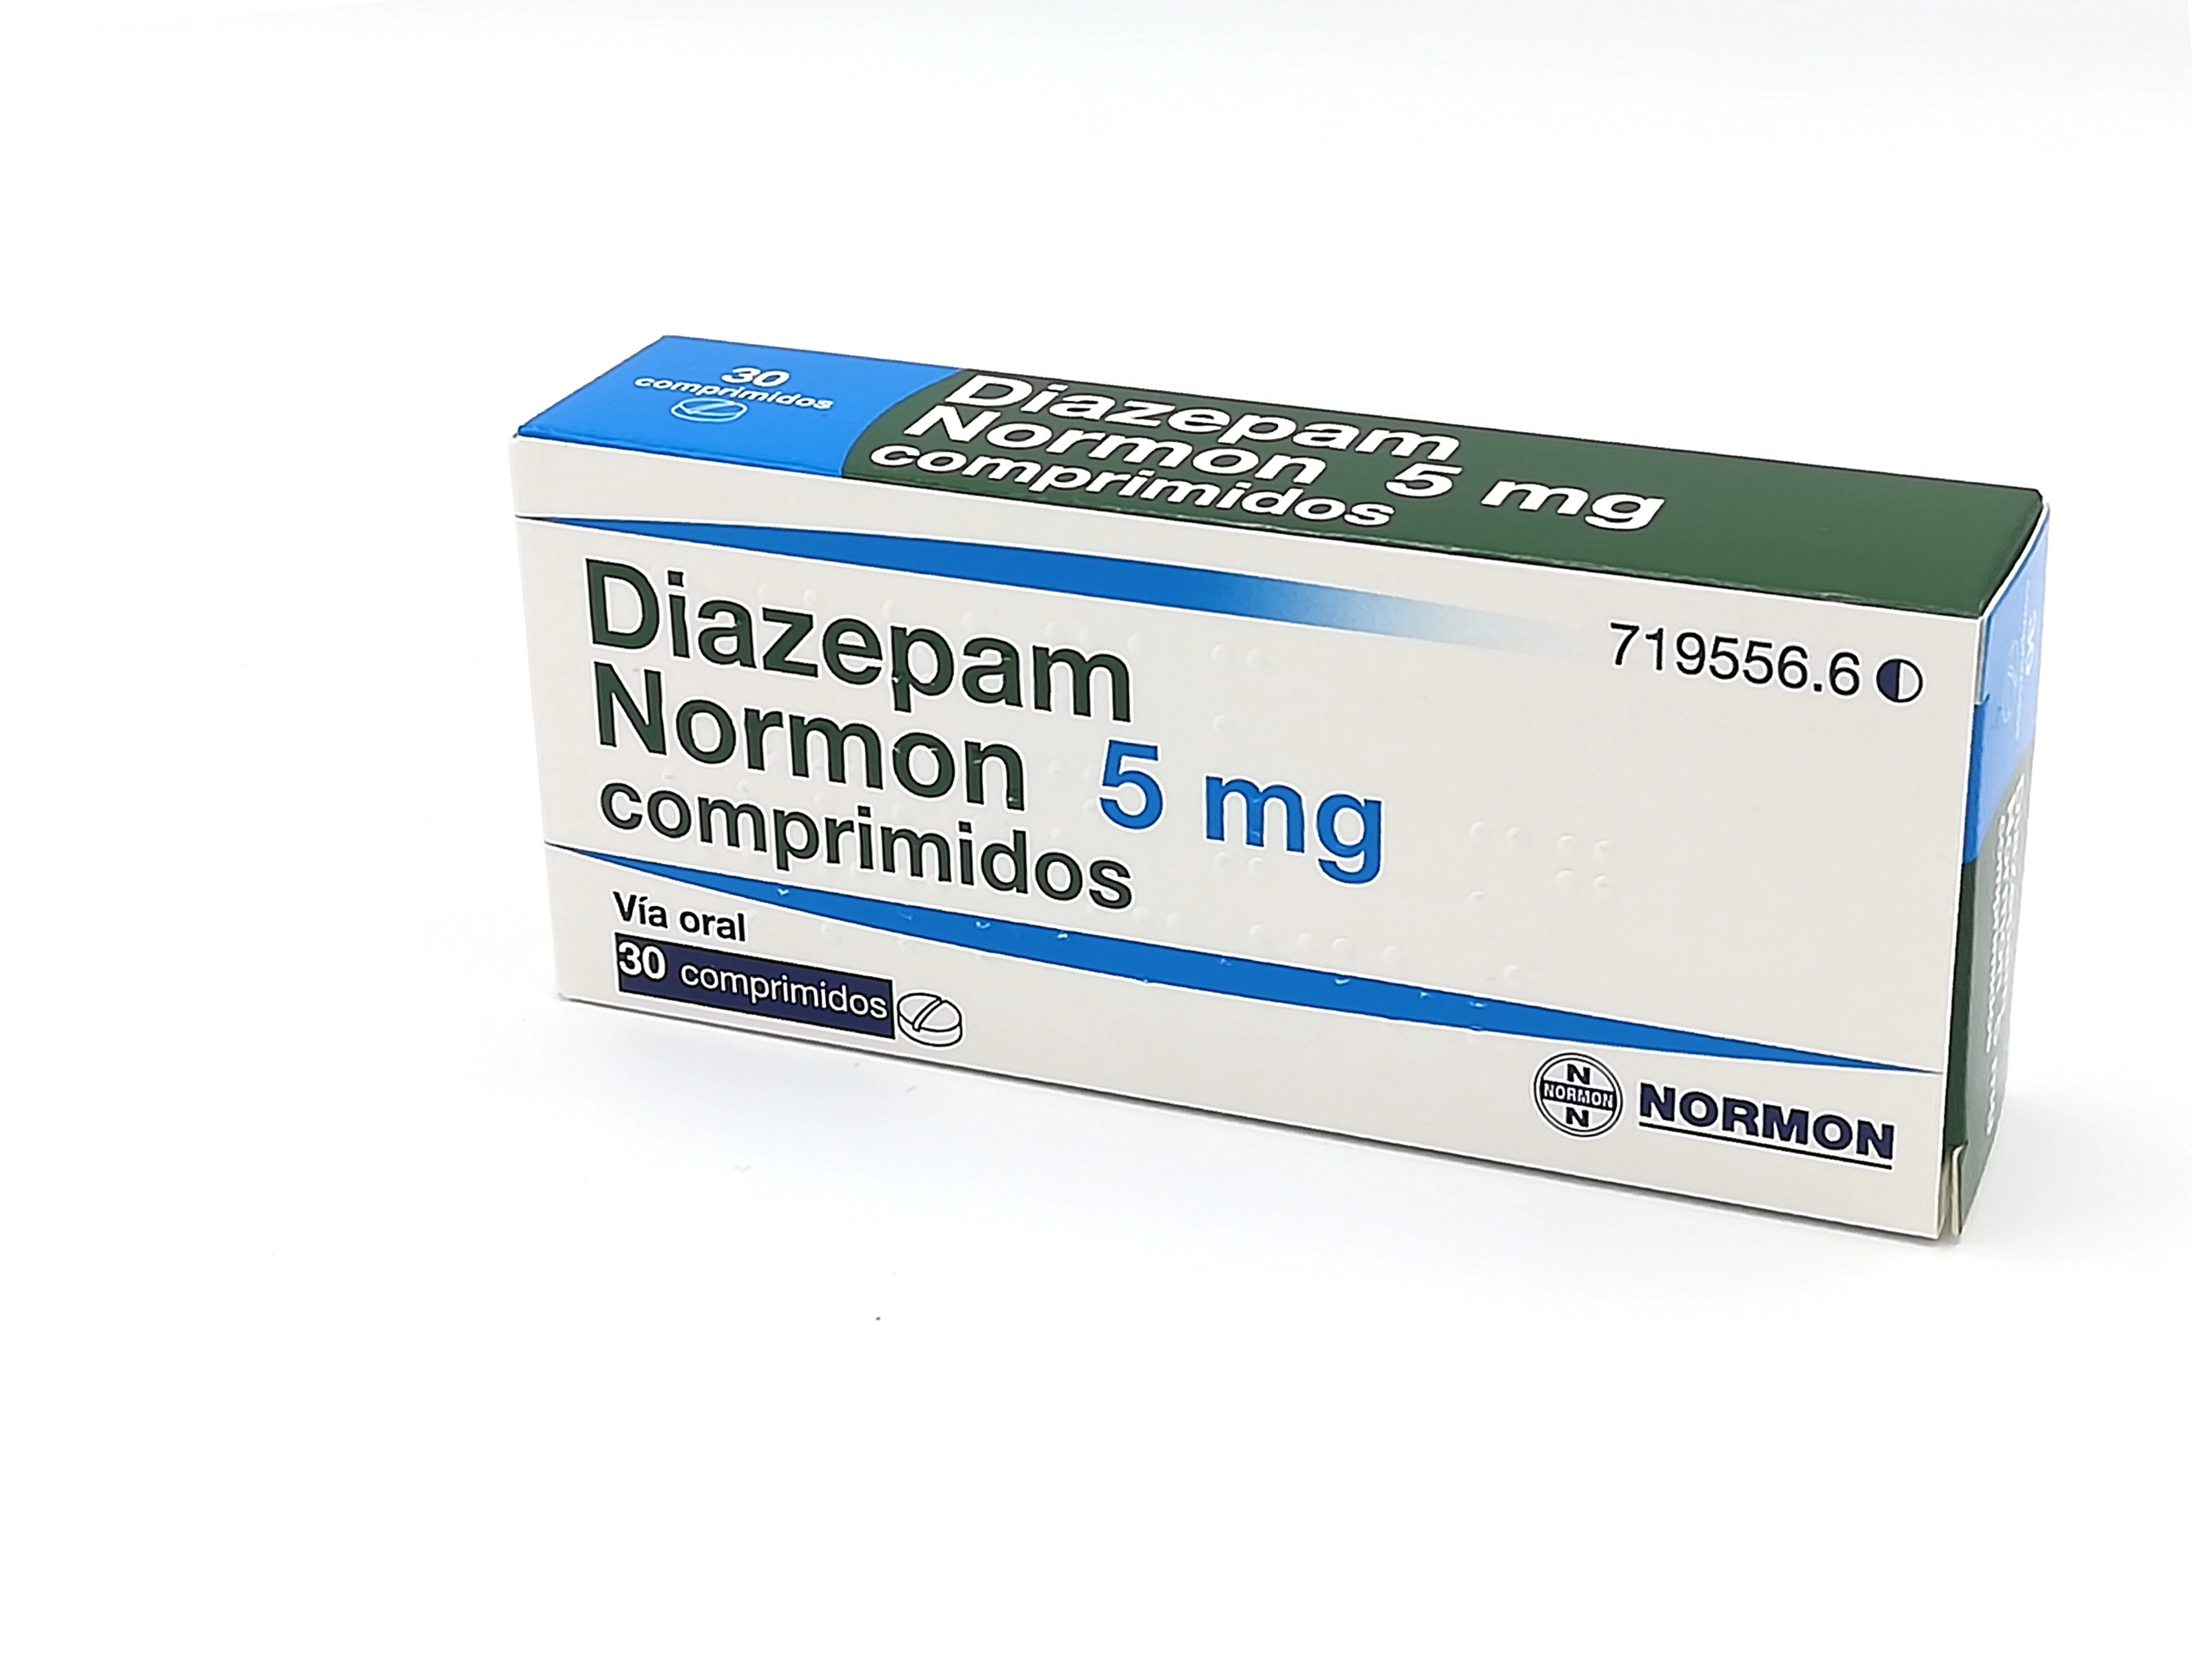 DIAZEPAM NORMON 5 mg 500 COMPRIMIDOS